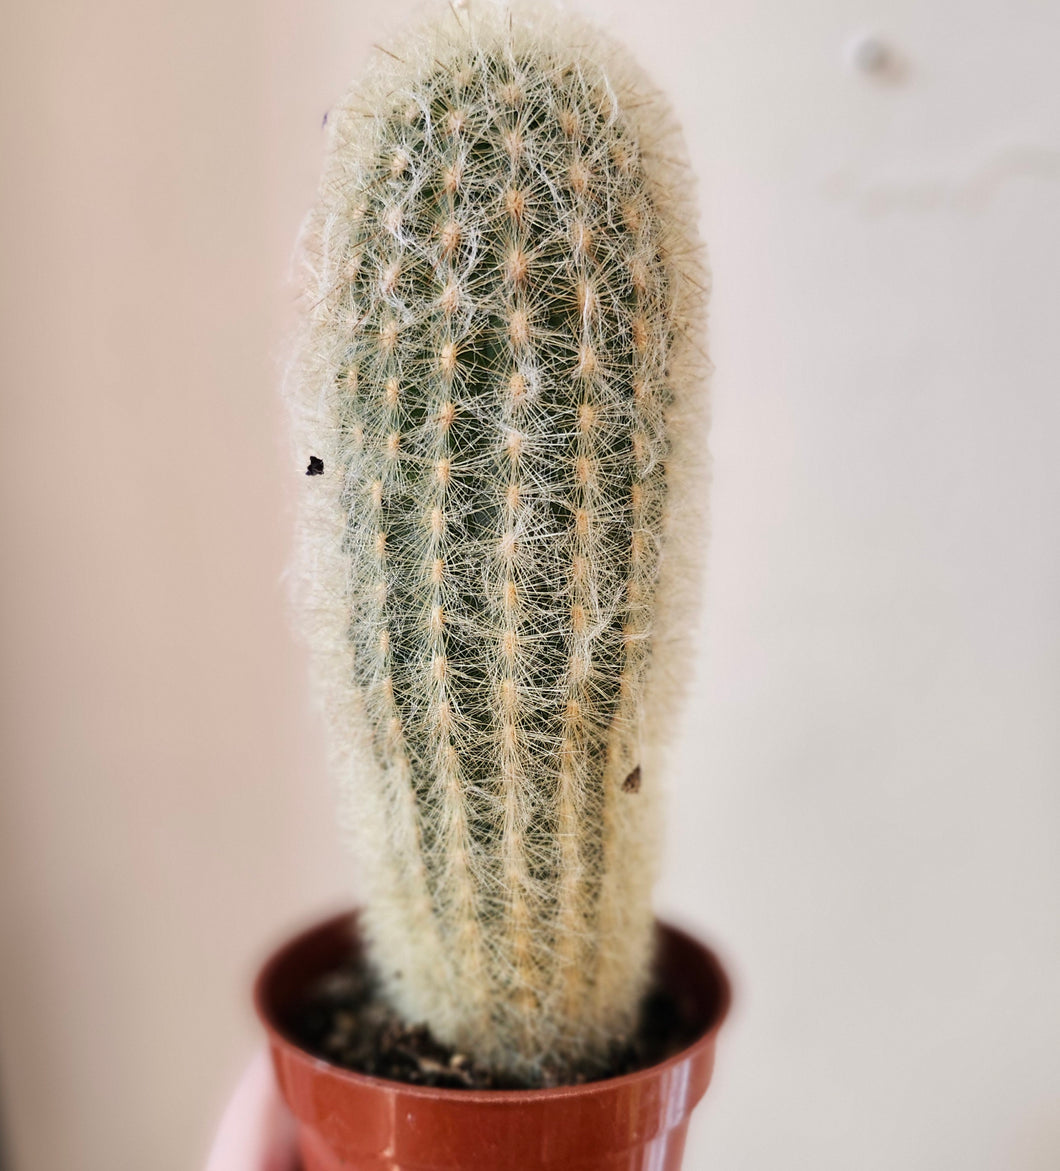 Cactus Espostao lanata